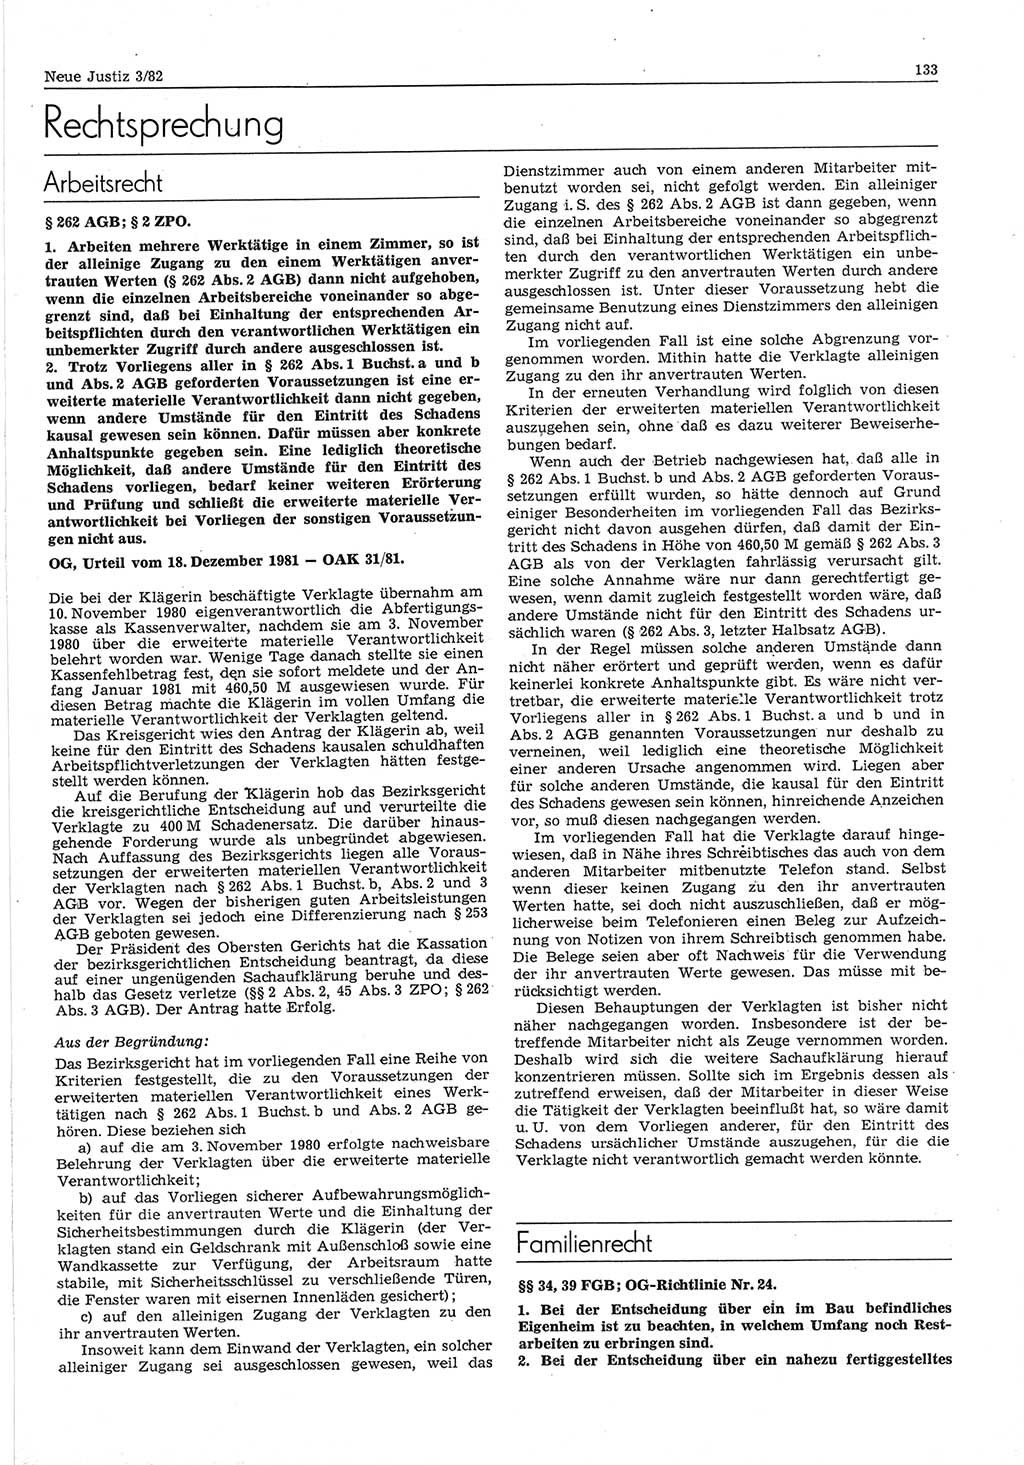 Neue Justiz (NJ), Zeitschrift für sozialistisches Recht und Gesetzlichkeit [Deutsche Demokratische Republik (DDR)], 36. Jahrgang 1982, Seite 133 (NJ DDR 1982, S. 133)